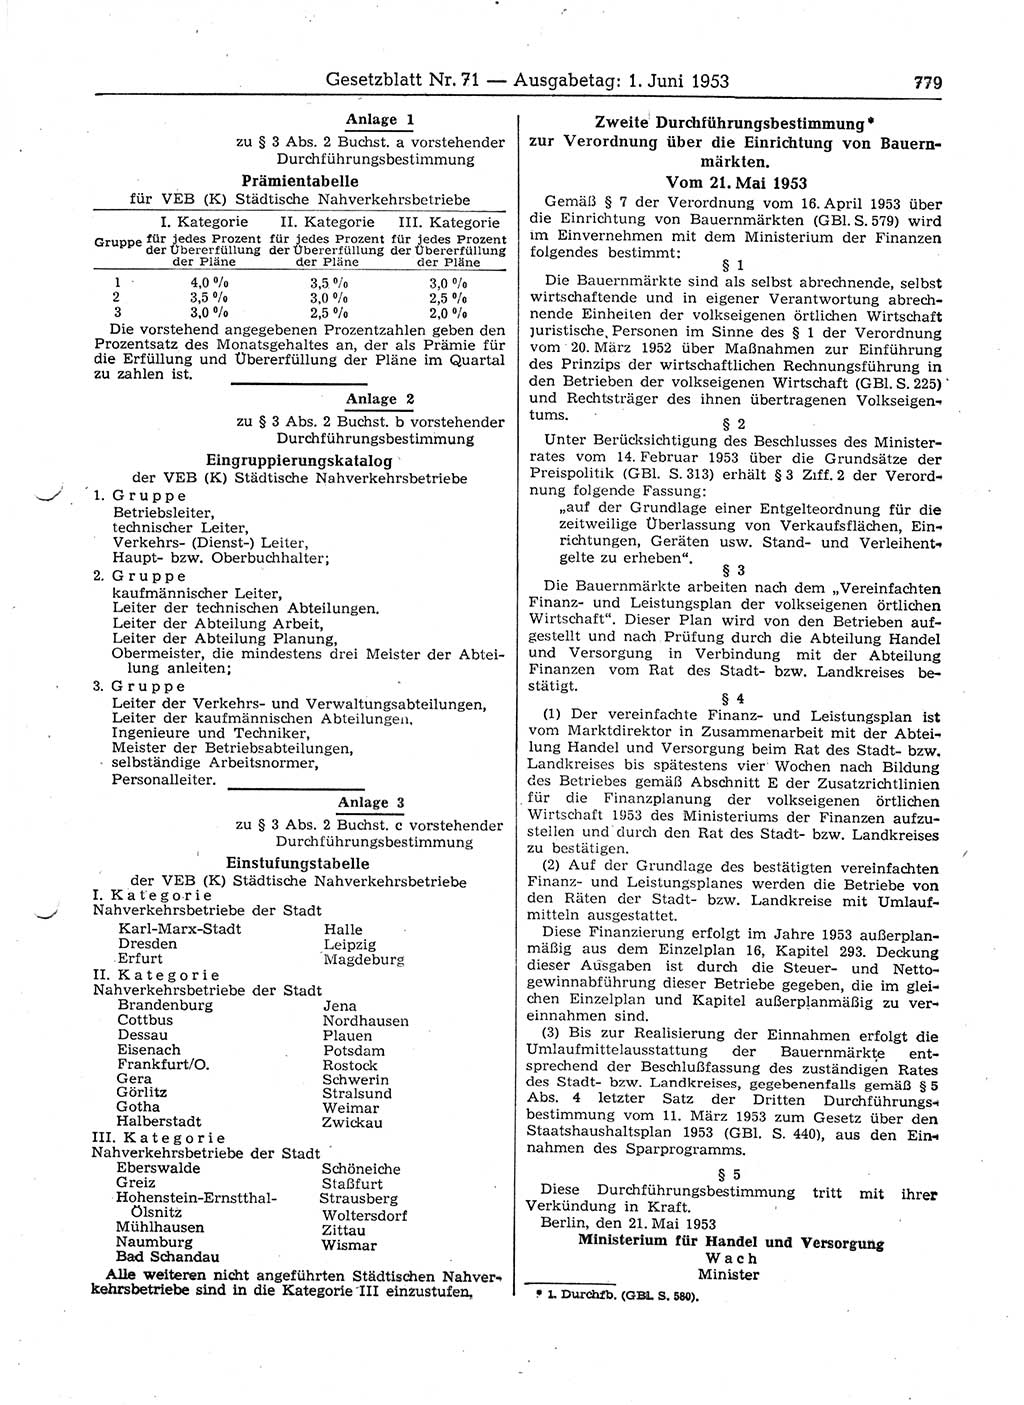 Gesetzblatt (GBl.) der Deutschen Demokratischen Republik (DDR) 1953, Seite 779 (GBl. DDR 1953, S. 779)